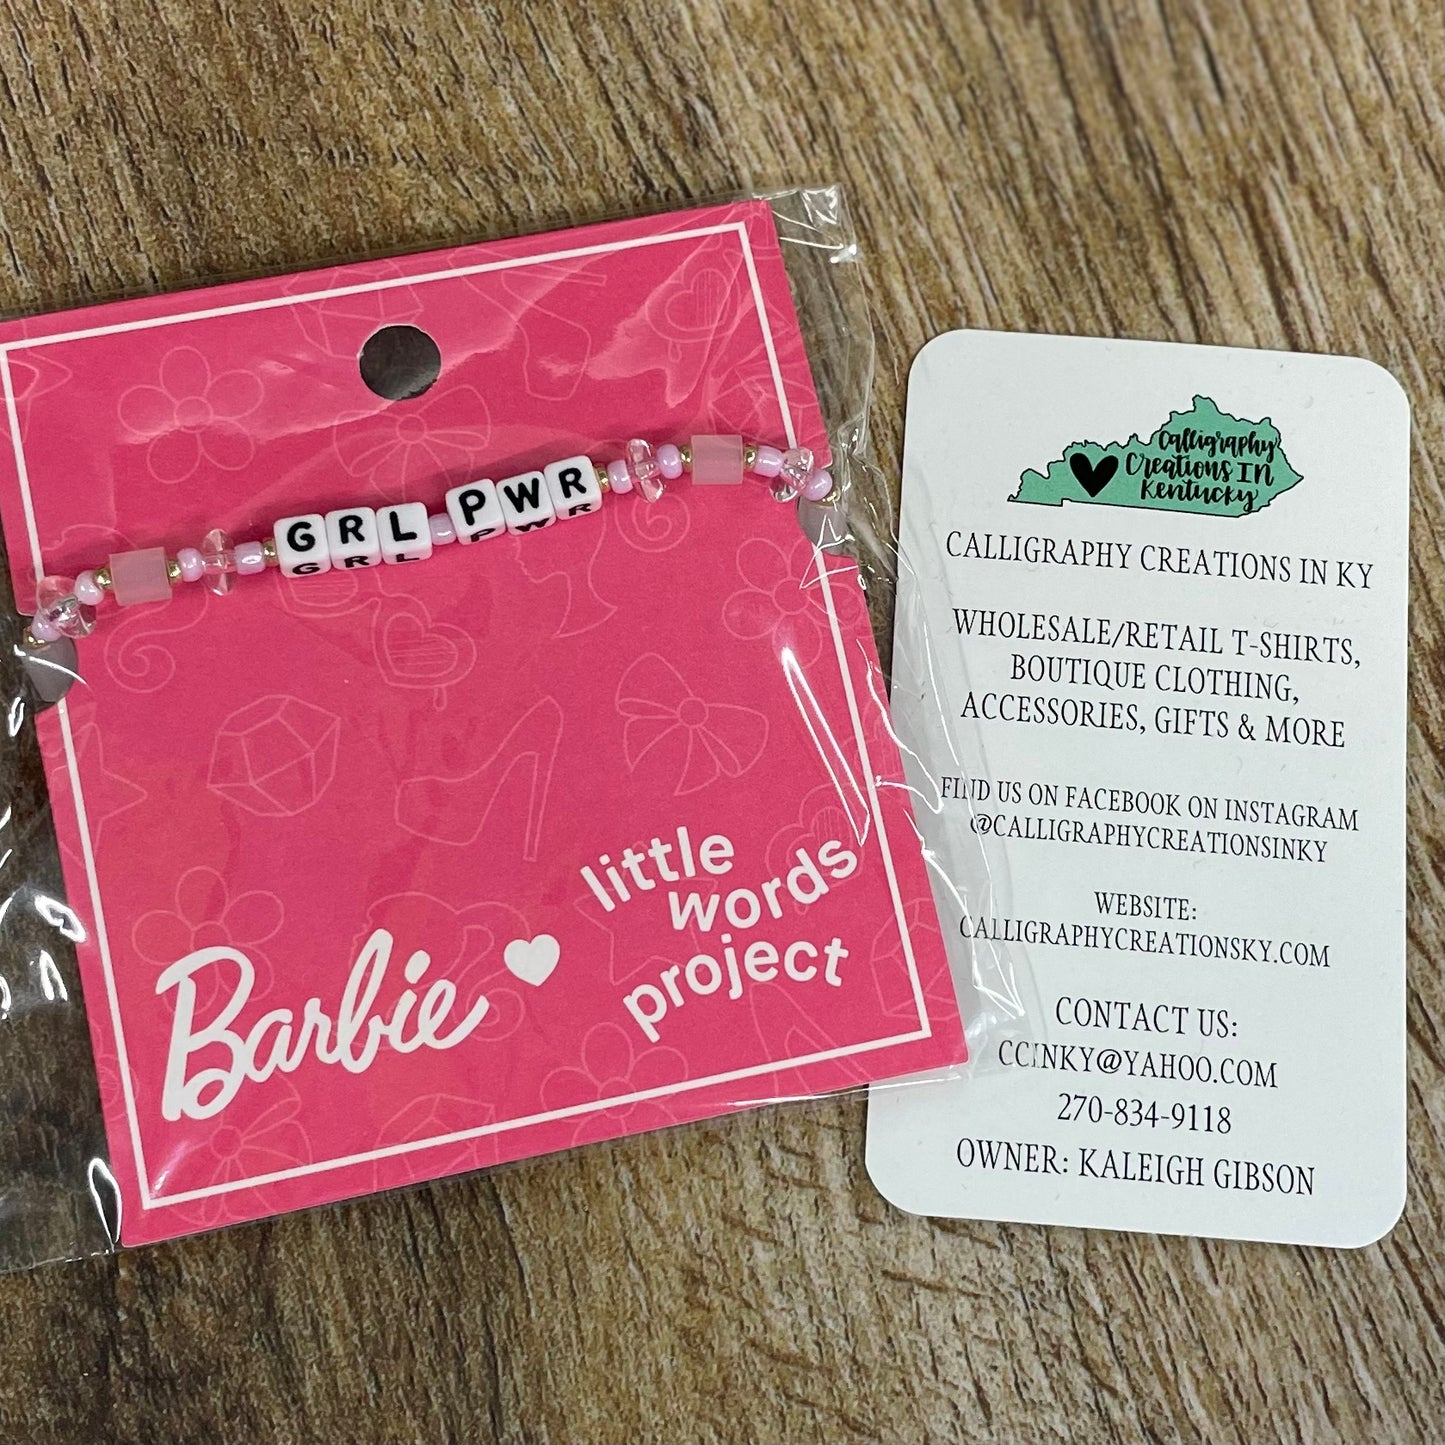 Grl Pwr / Barbie X Little Words Project Beaded Bracelet